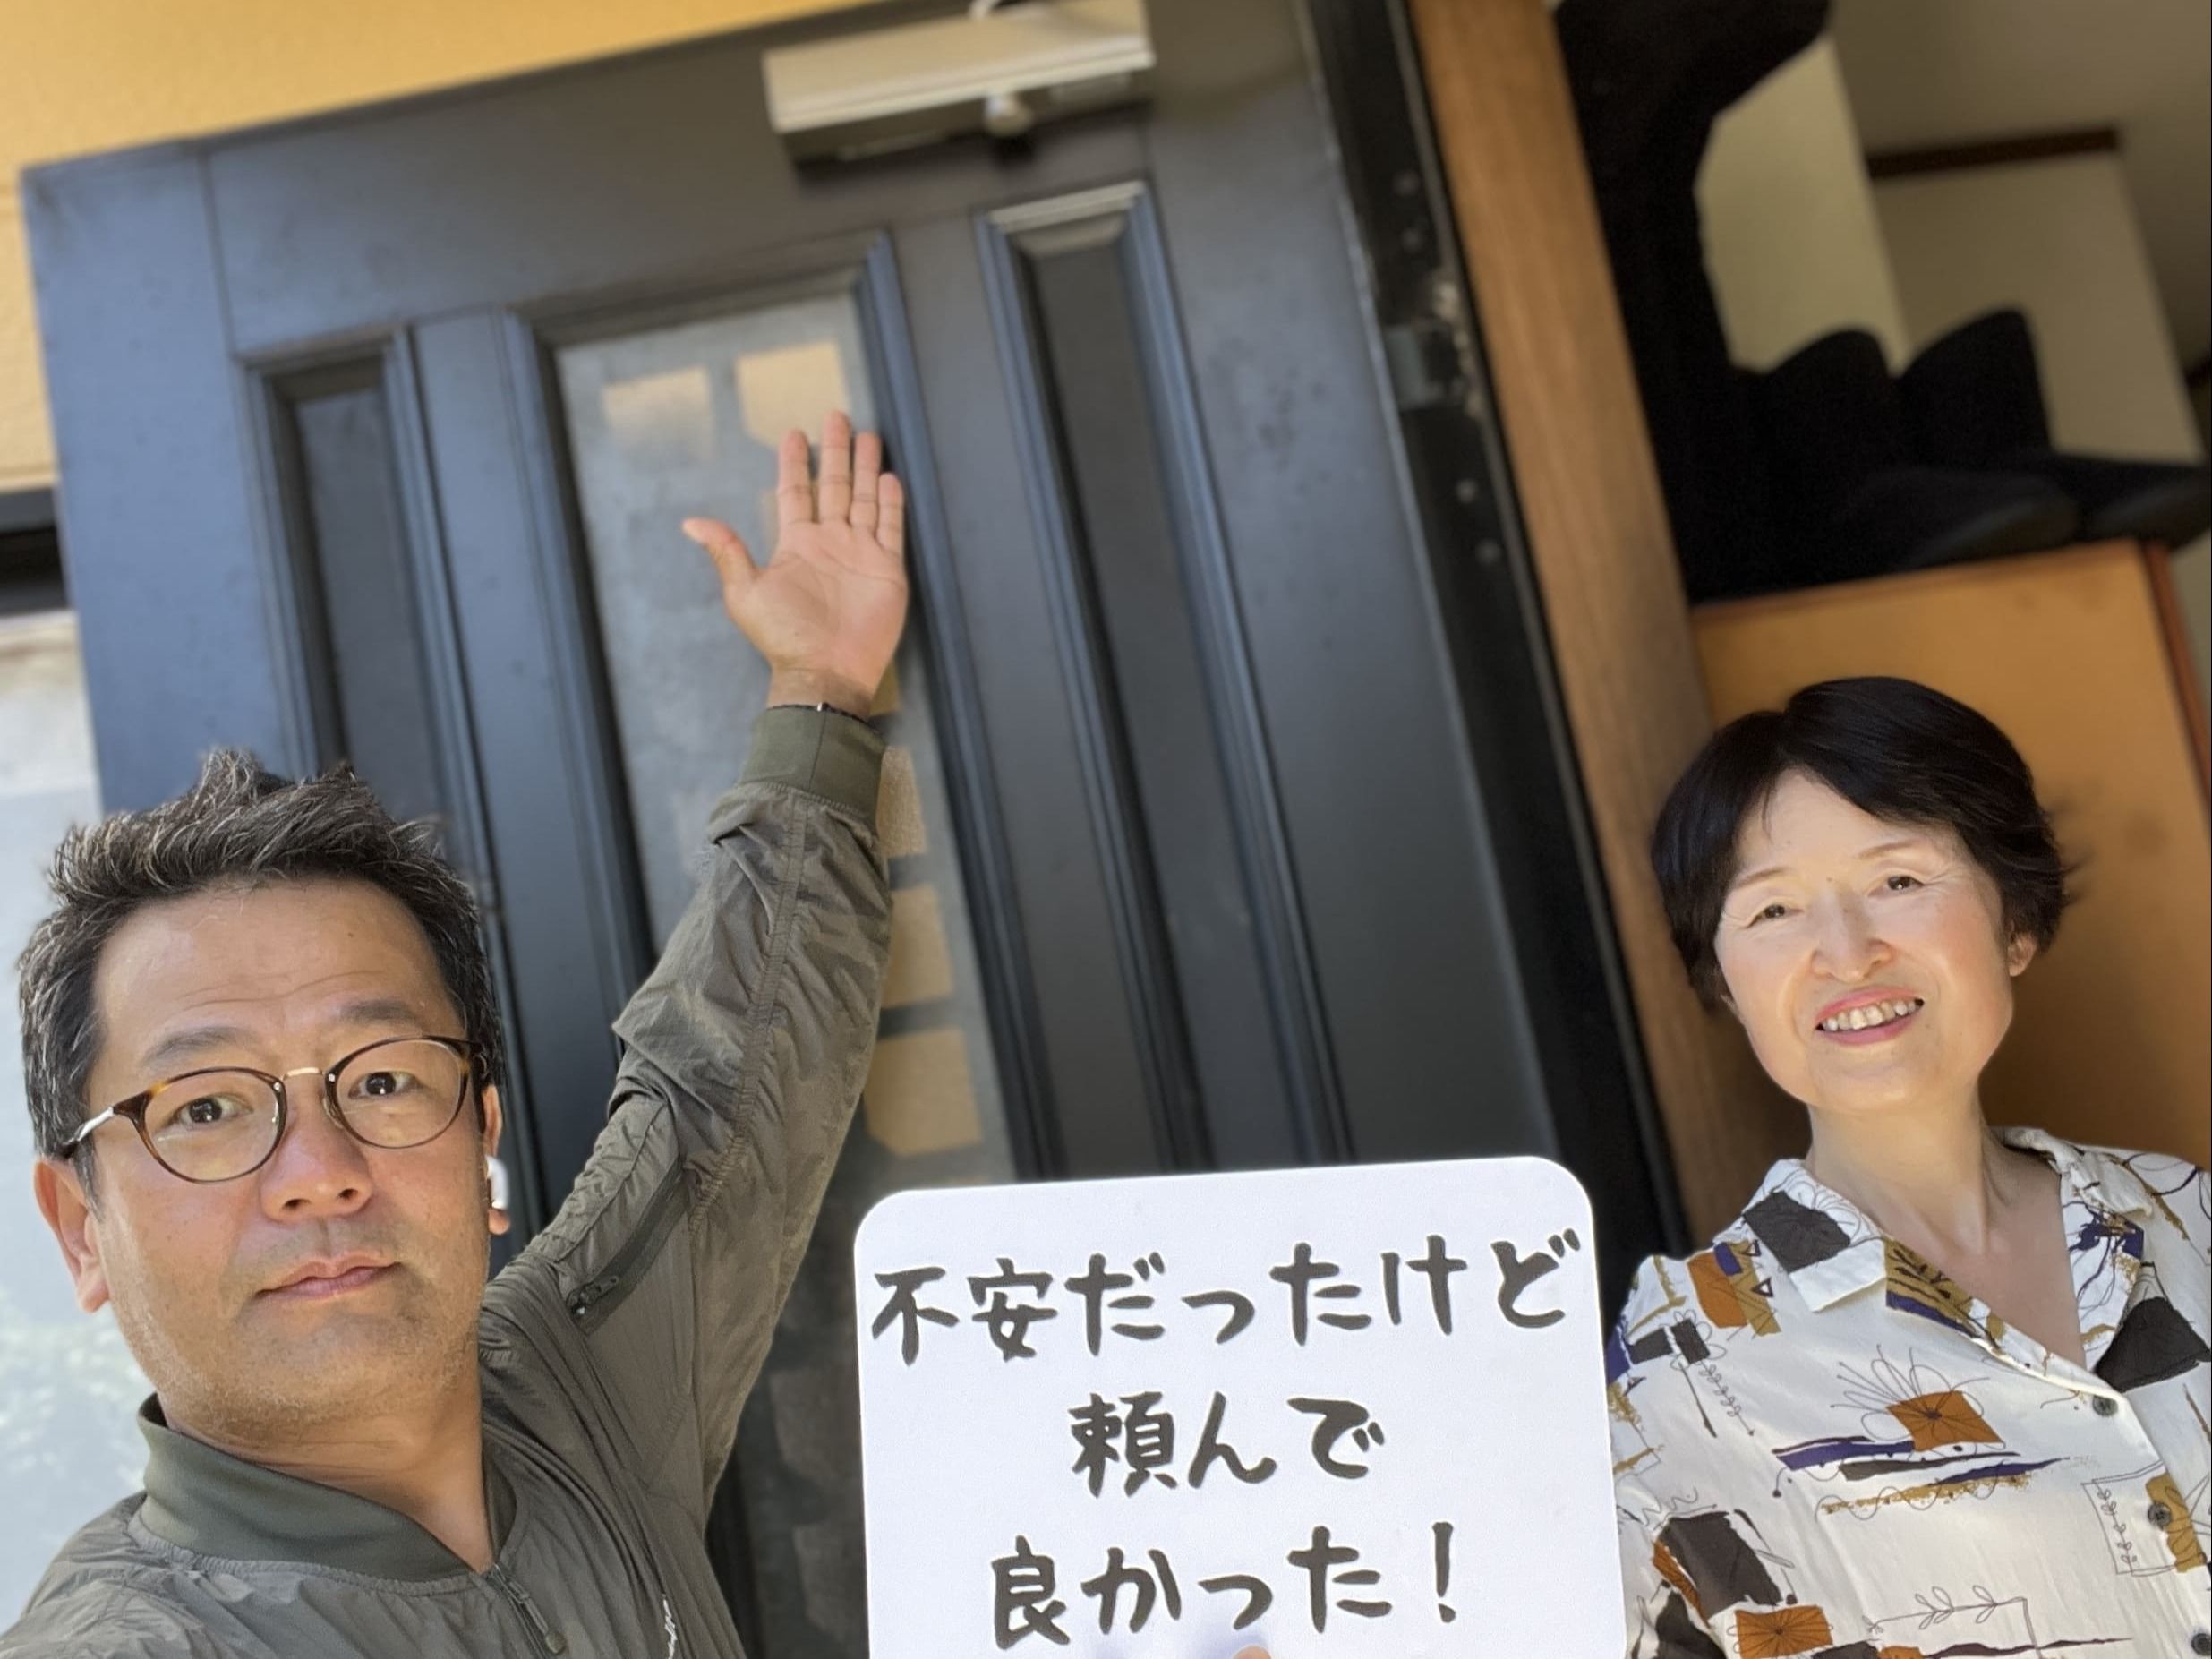 【上尾市地域】カギとドア修理コバヤシの店内・外観画像3